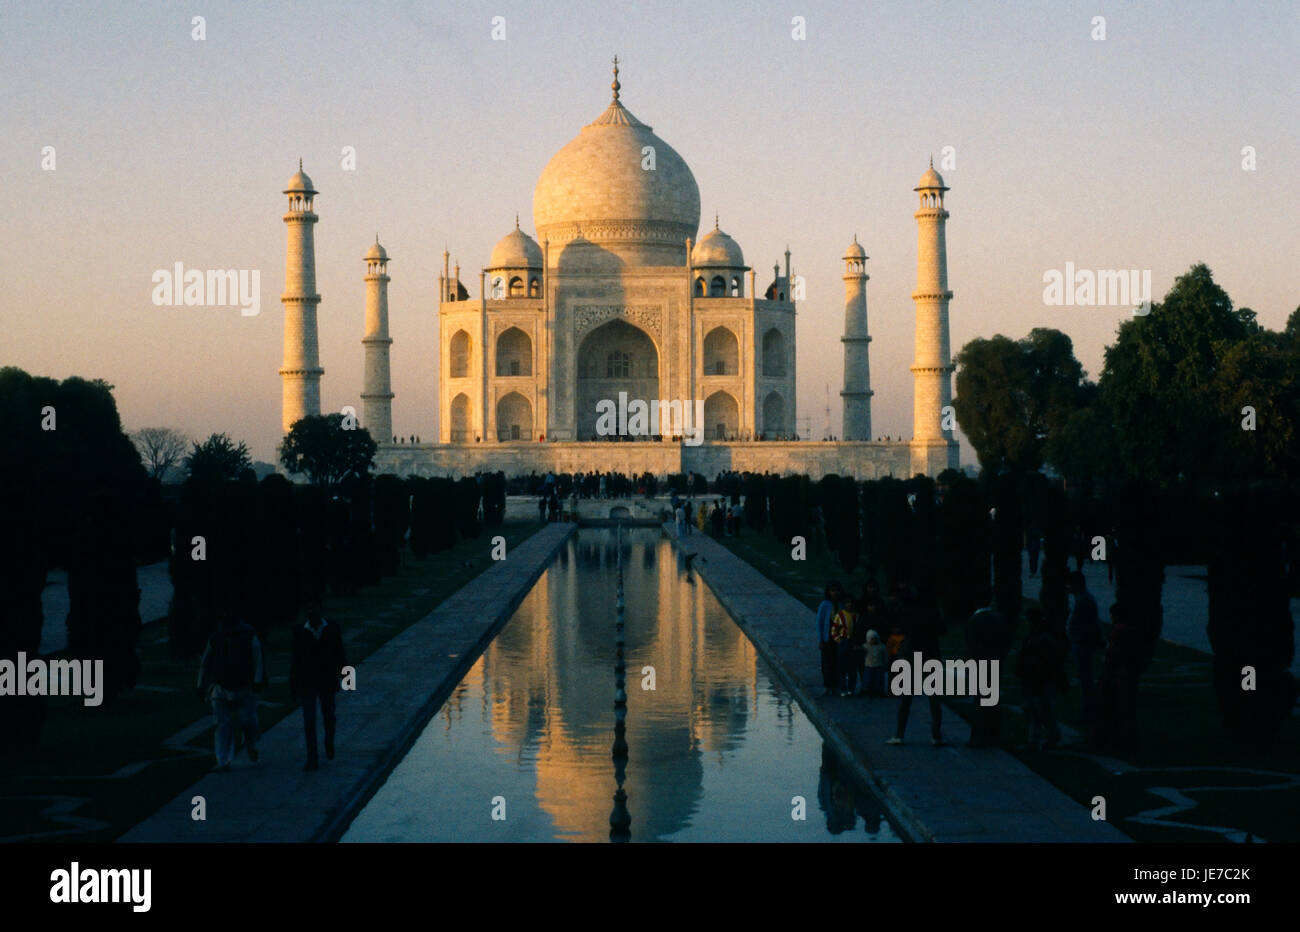 India, Uttar Pradesh, Agra il Taj Mahal di sera la luce riflessa in superficie ondulata del corso d'acqua attraverso giardini formali in primo piano con i visitatori su ciascun lato. Foto Stock